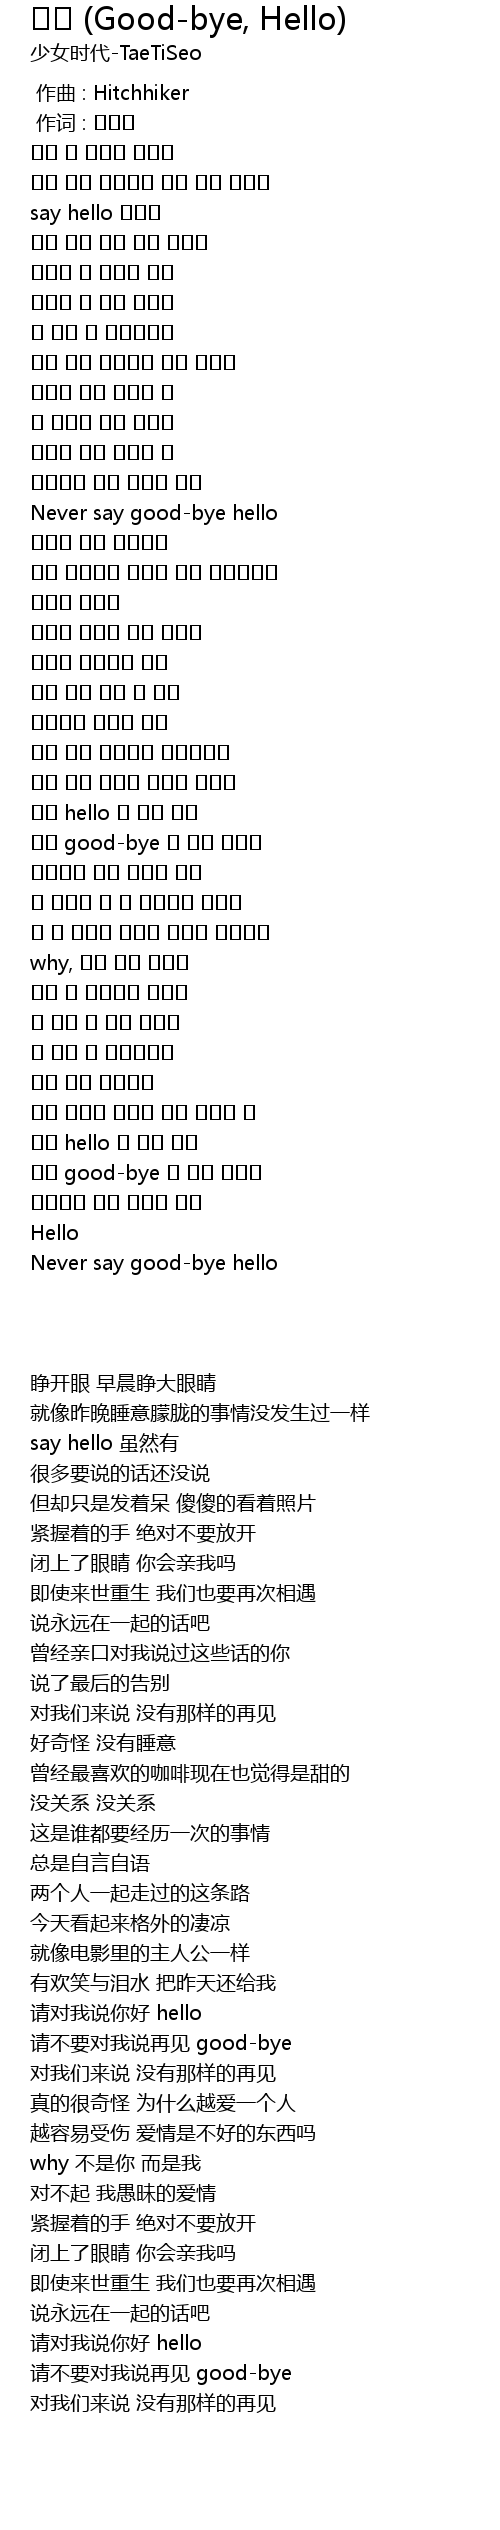 Goodbye hello lyrics